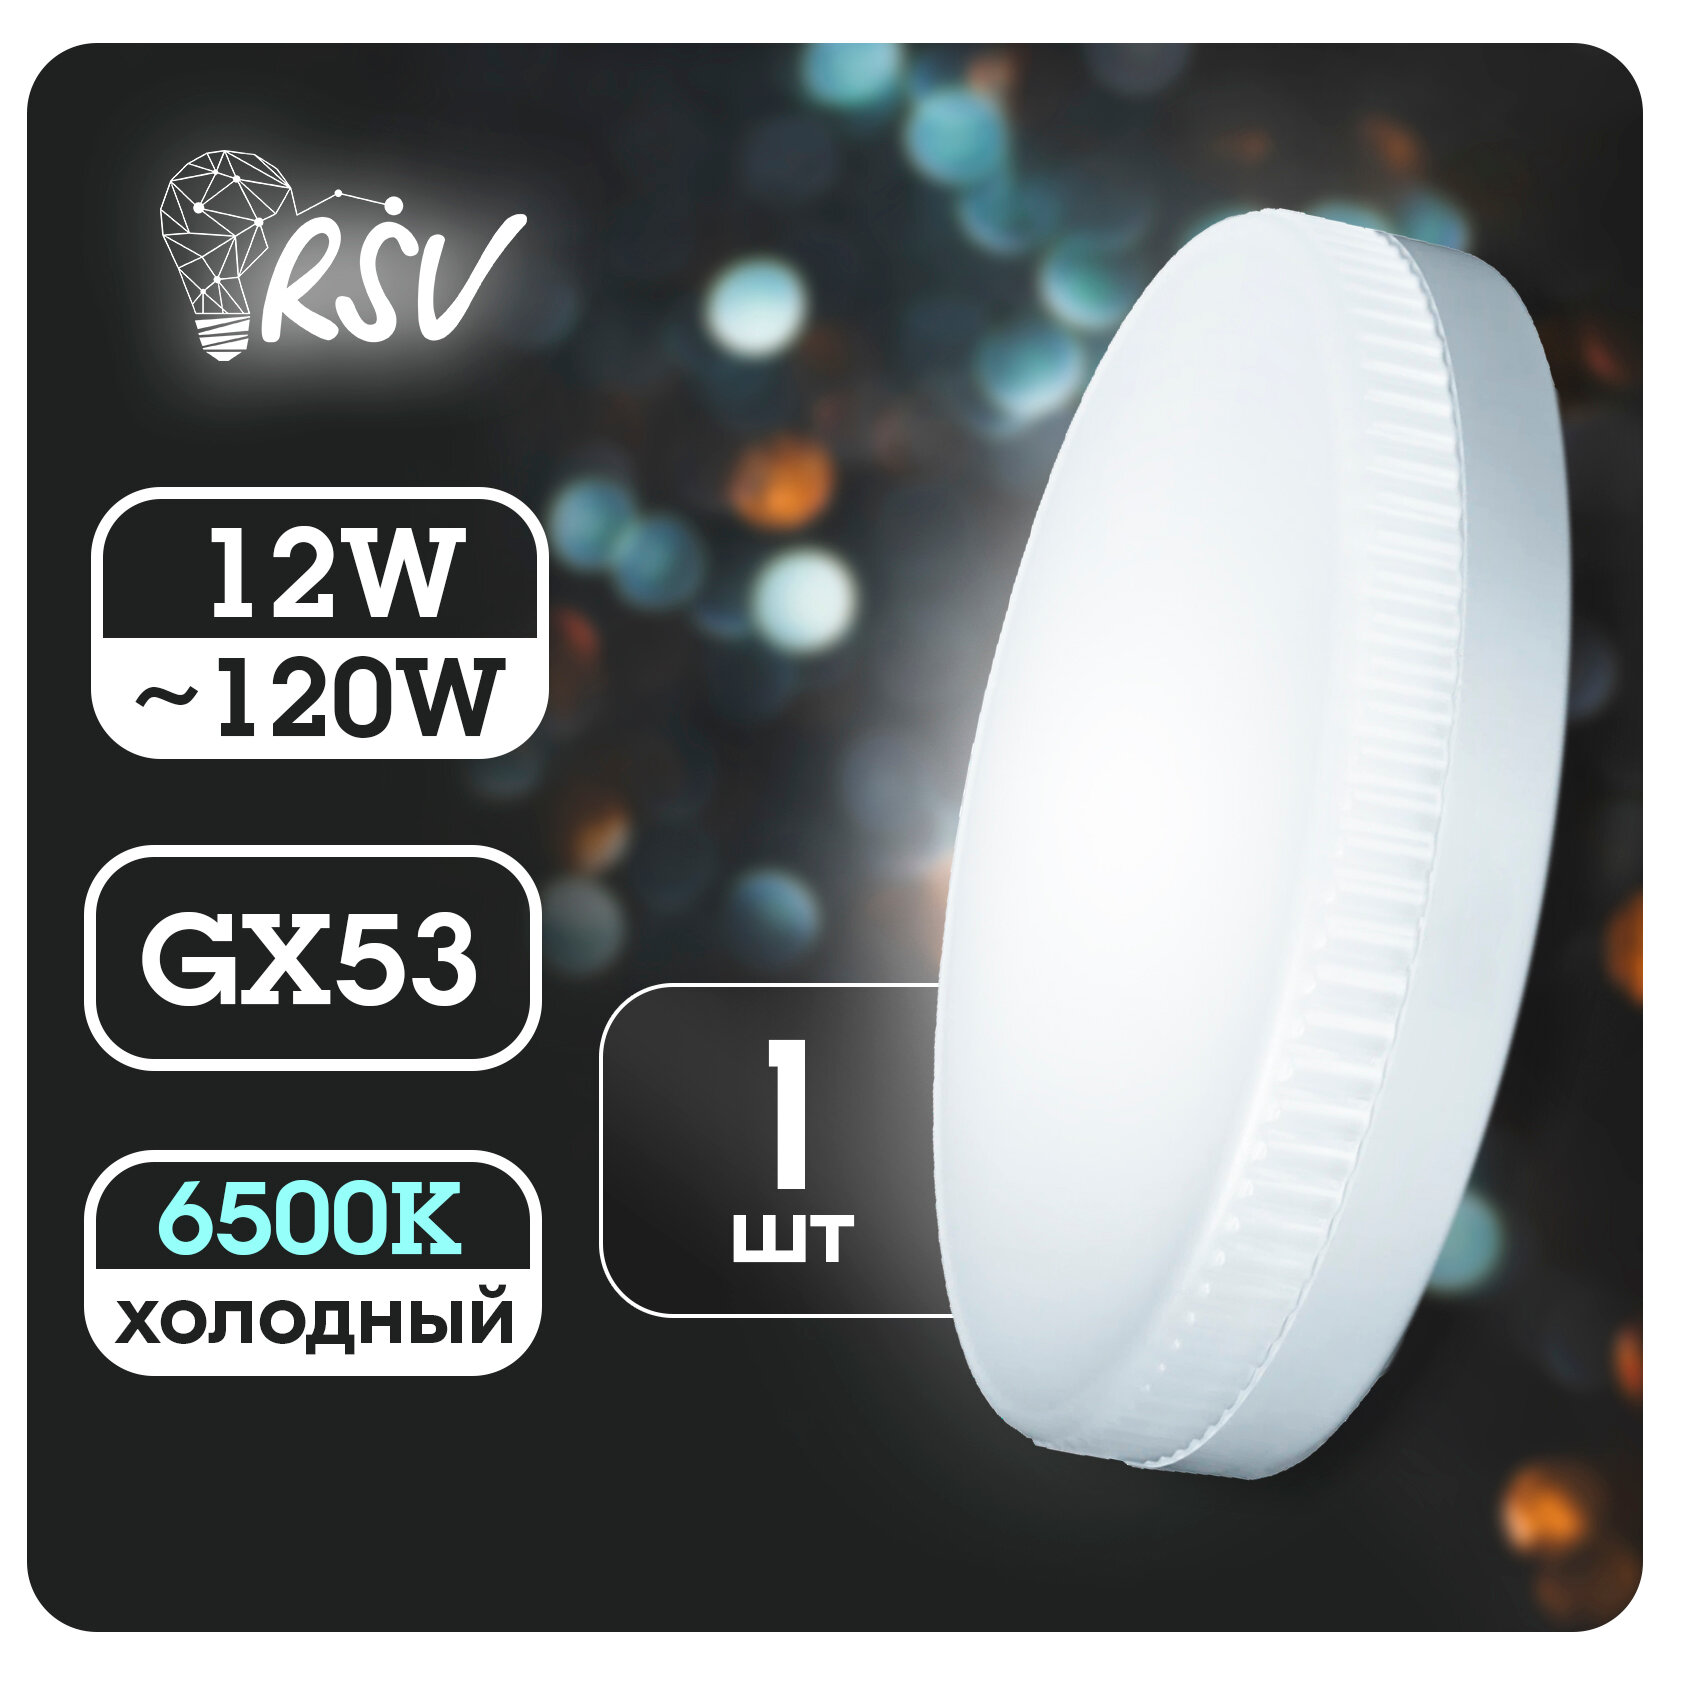 Лампа светодиодная RSV GX53 12 Вт (120 Вт) 6500K, холодный свет